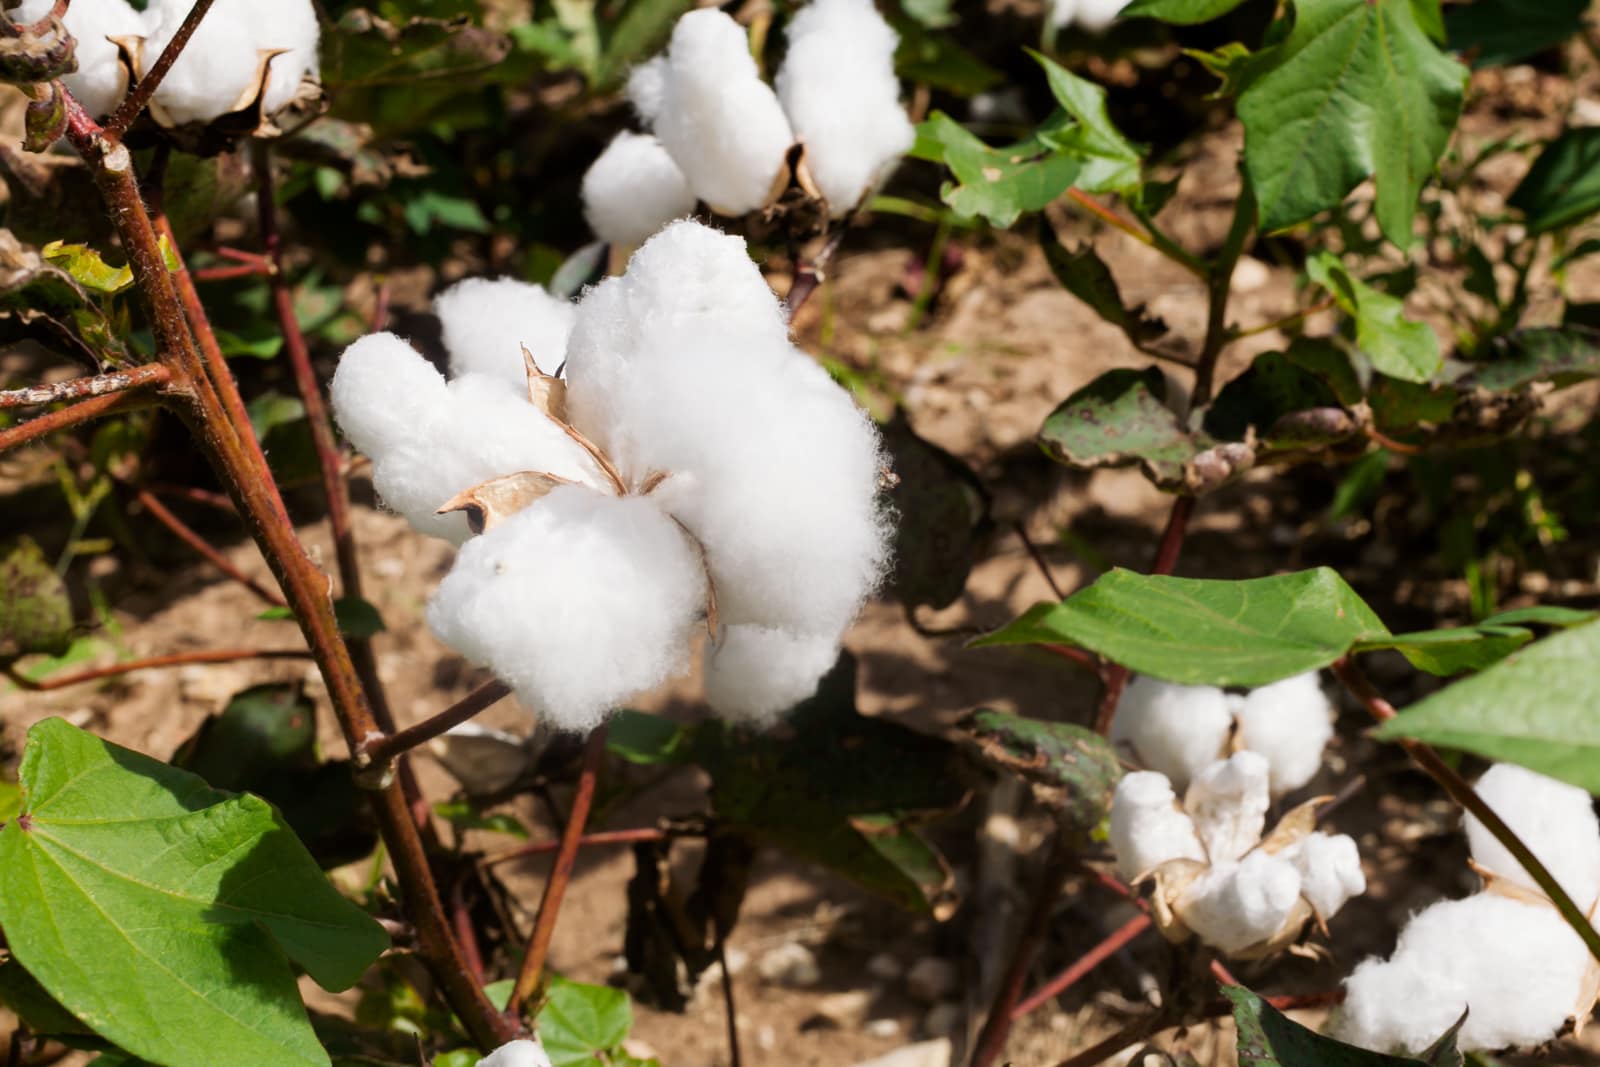 Cotton crops